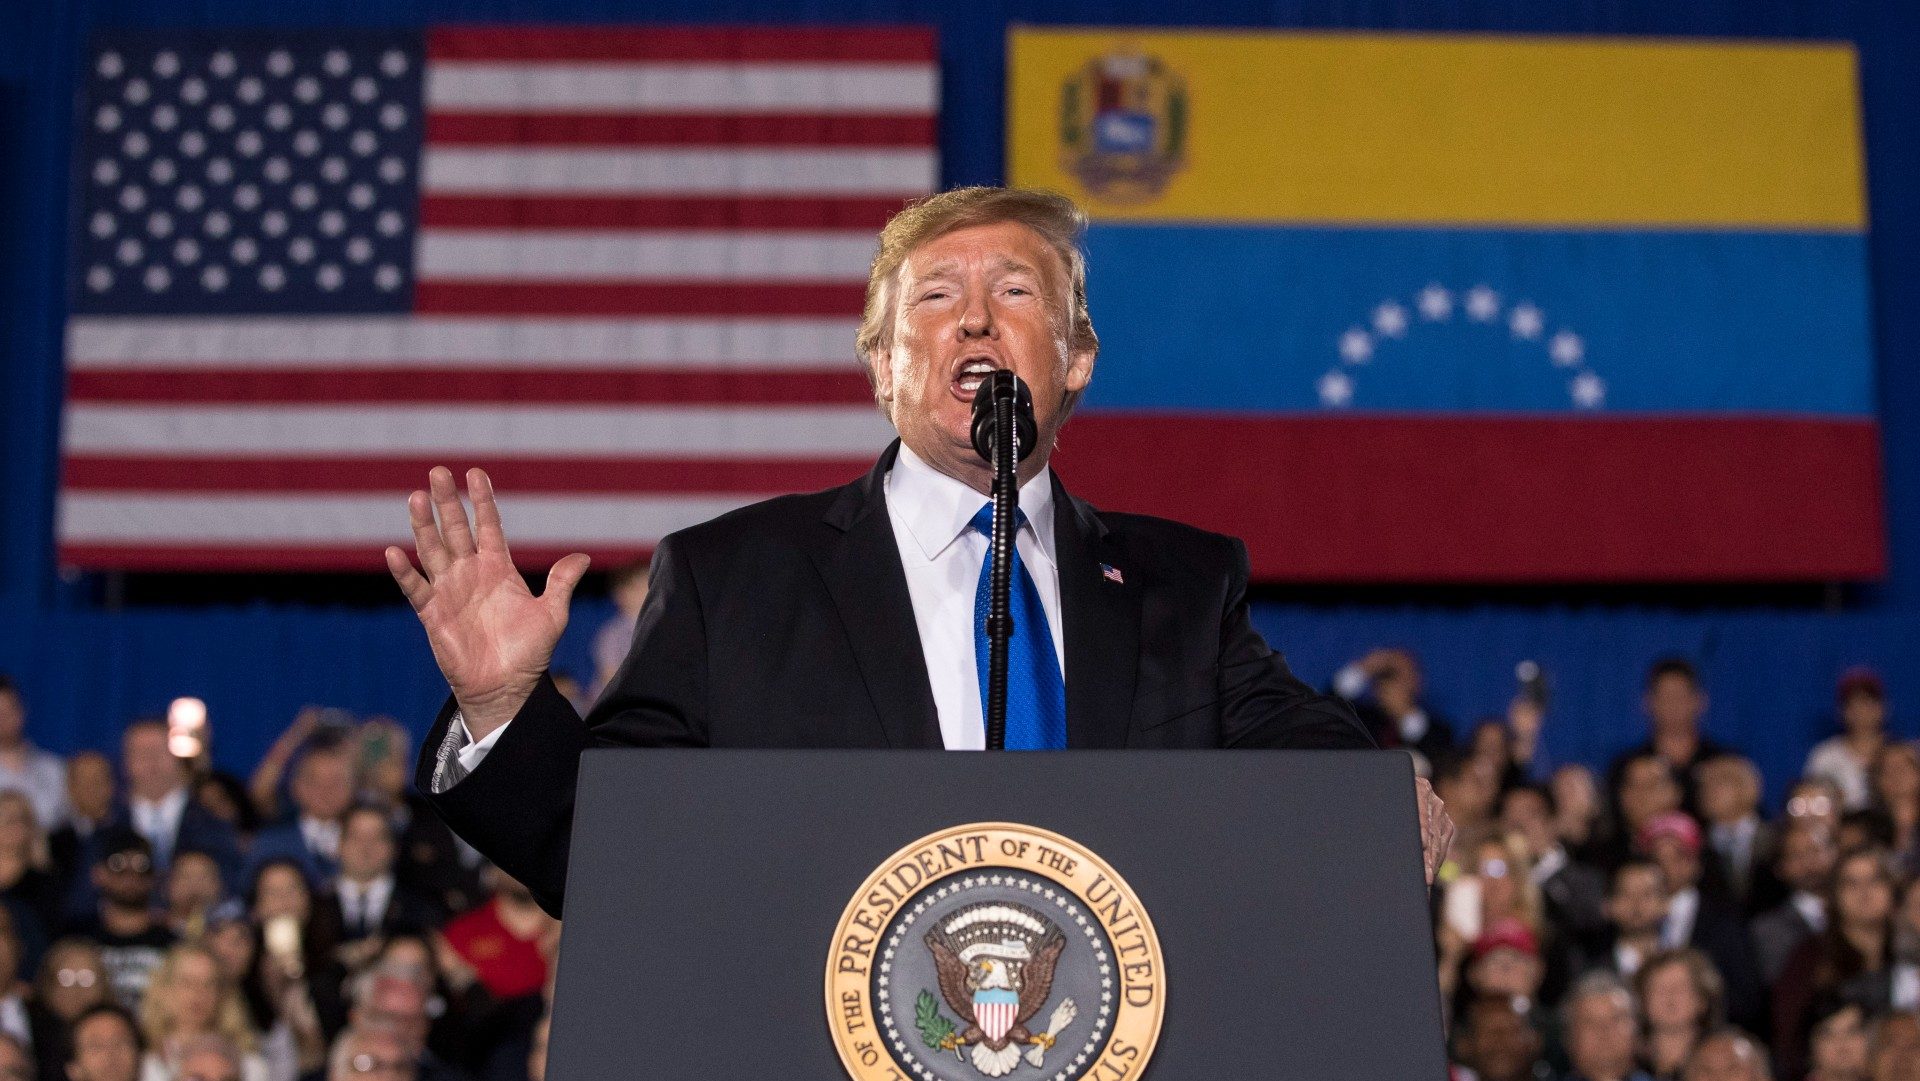 CNNE verifica: Trump dice falsamente que criminalidad en Venezuela se redujo porque sus delincuentes llegaron a EE.UU.